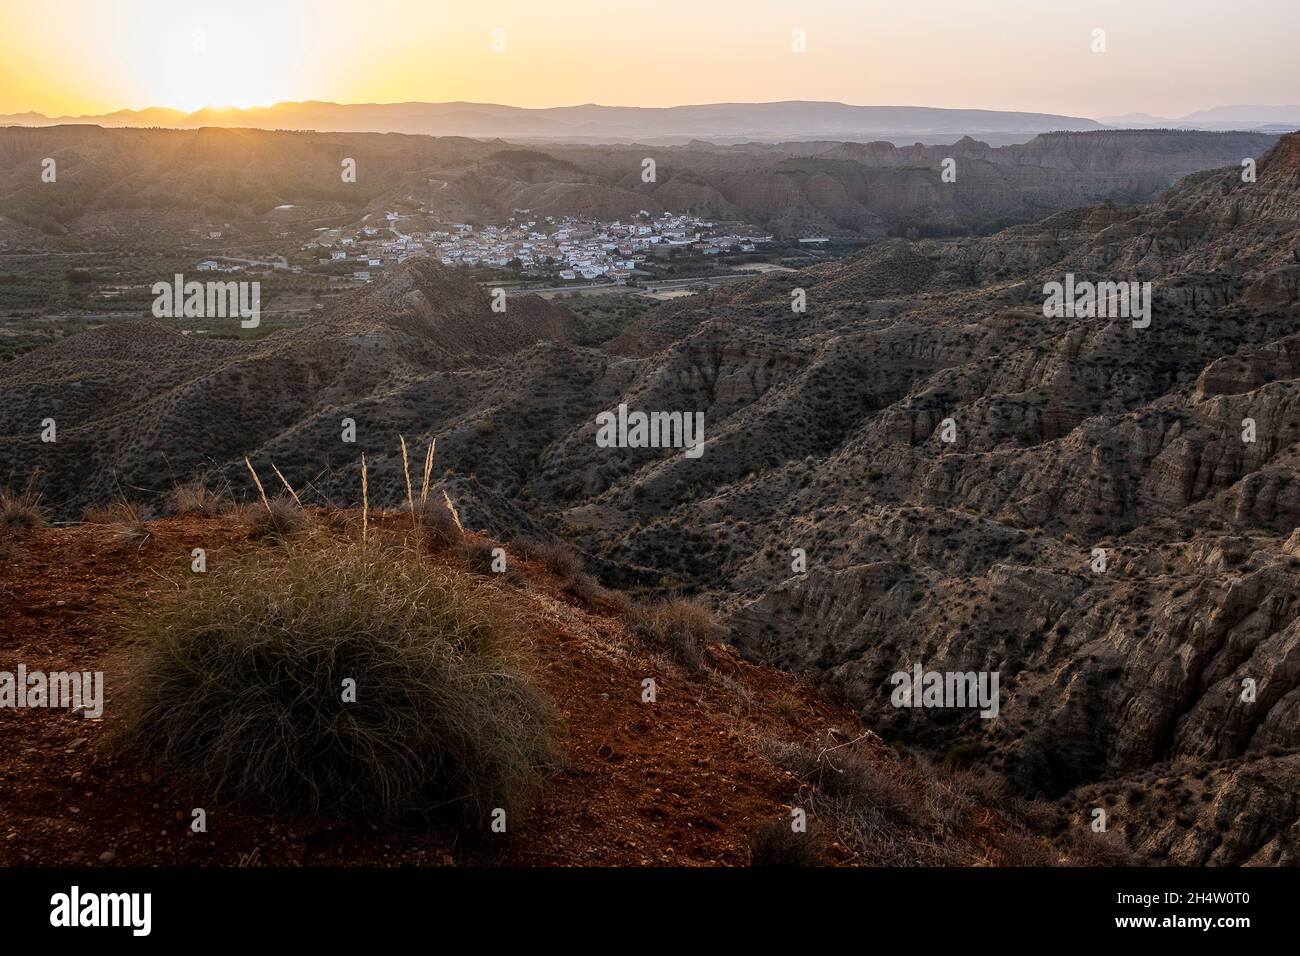 Badlands of Guadix, Guadix, Geopark of Granada, Granada, Andalucia, Spain Stock Photo